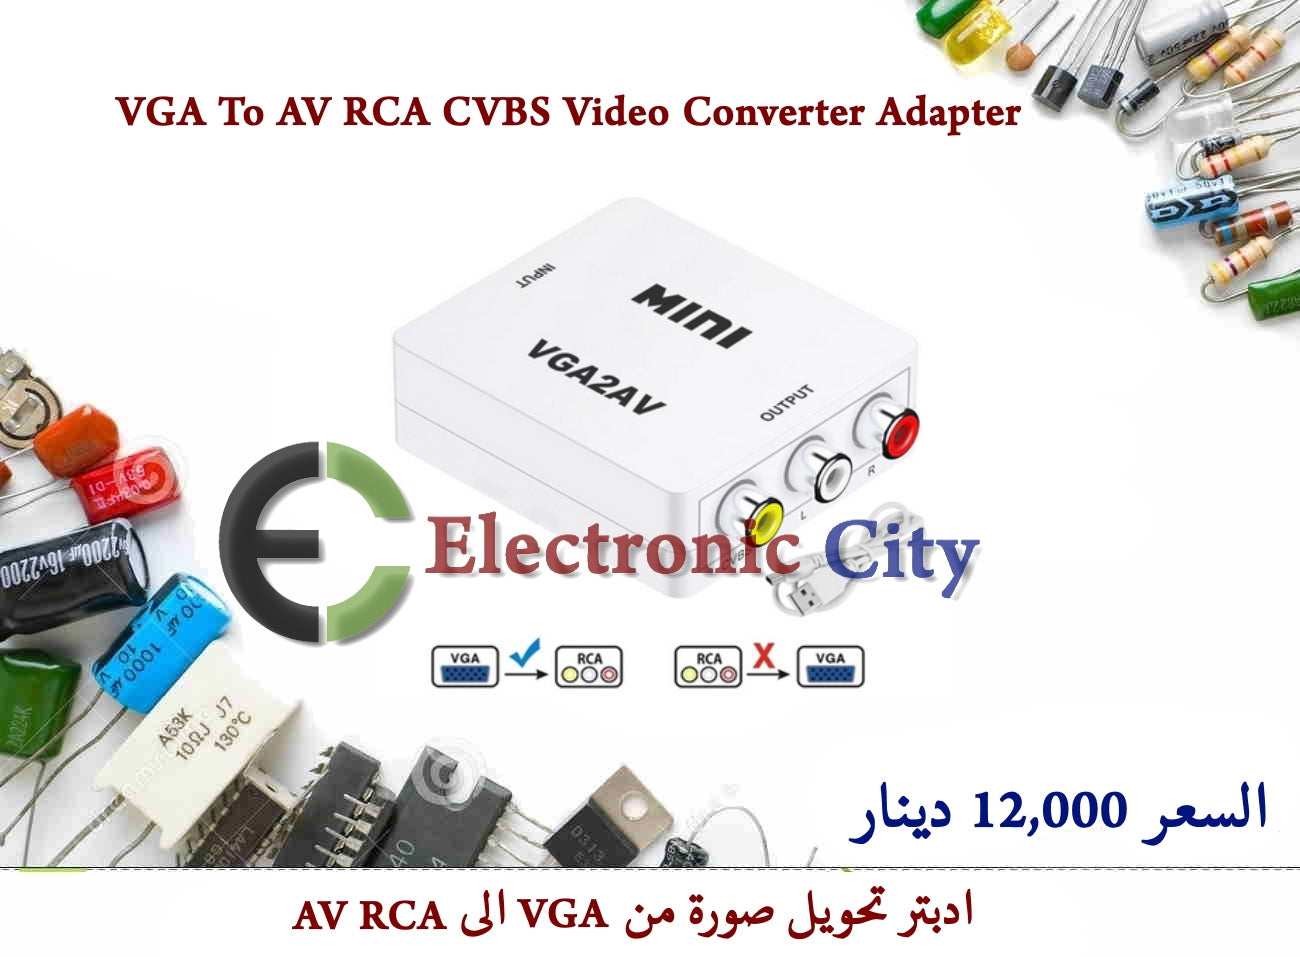 VGA To AV RCA CVBS Video Converter Adapter